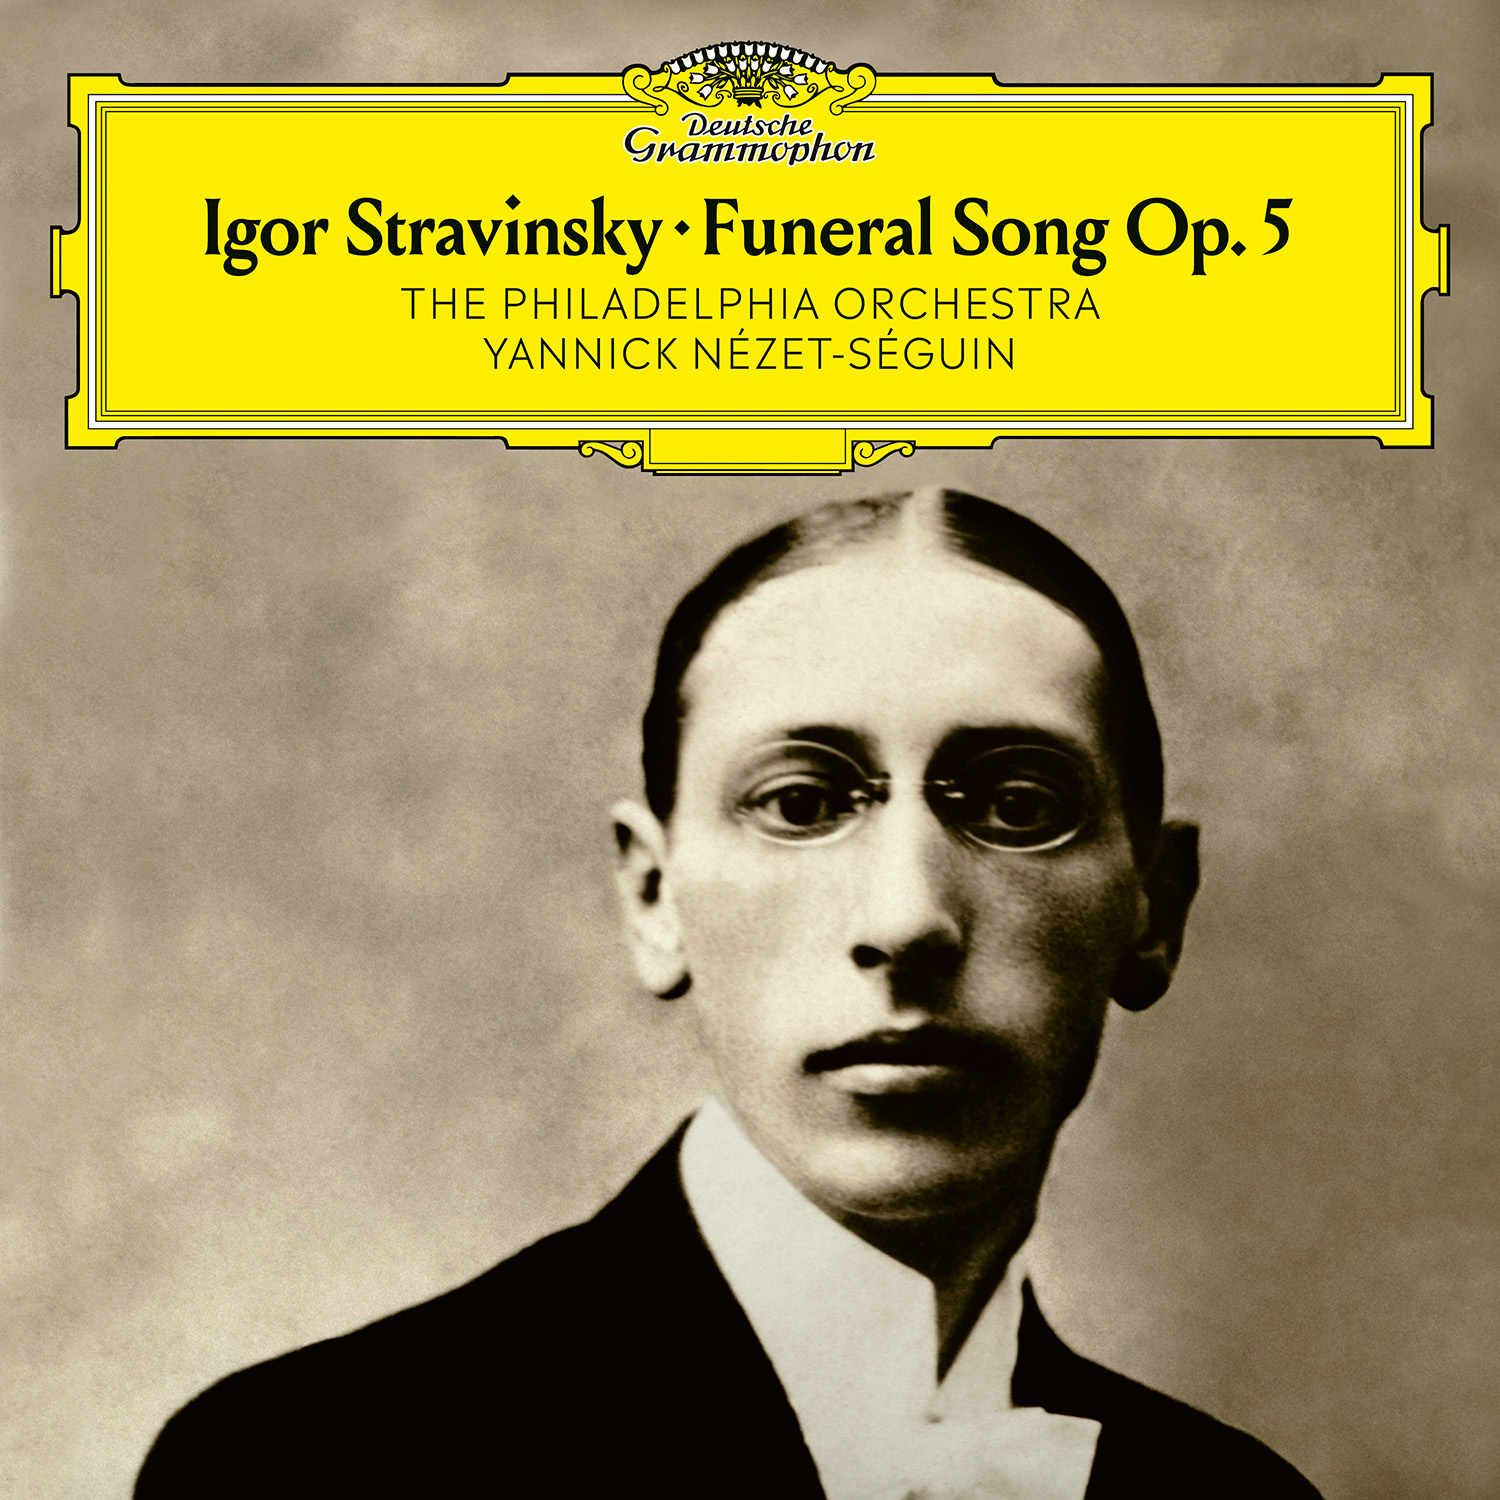 Стравинский. Funeral Song. Funereal песня. Yannick nézet-Séguin Rachmaninoff: Symphony no. 1 & Symphonic Dances. Funeral song перевод